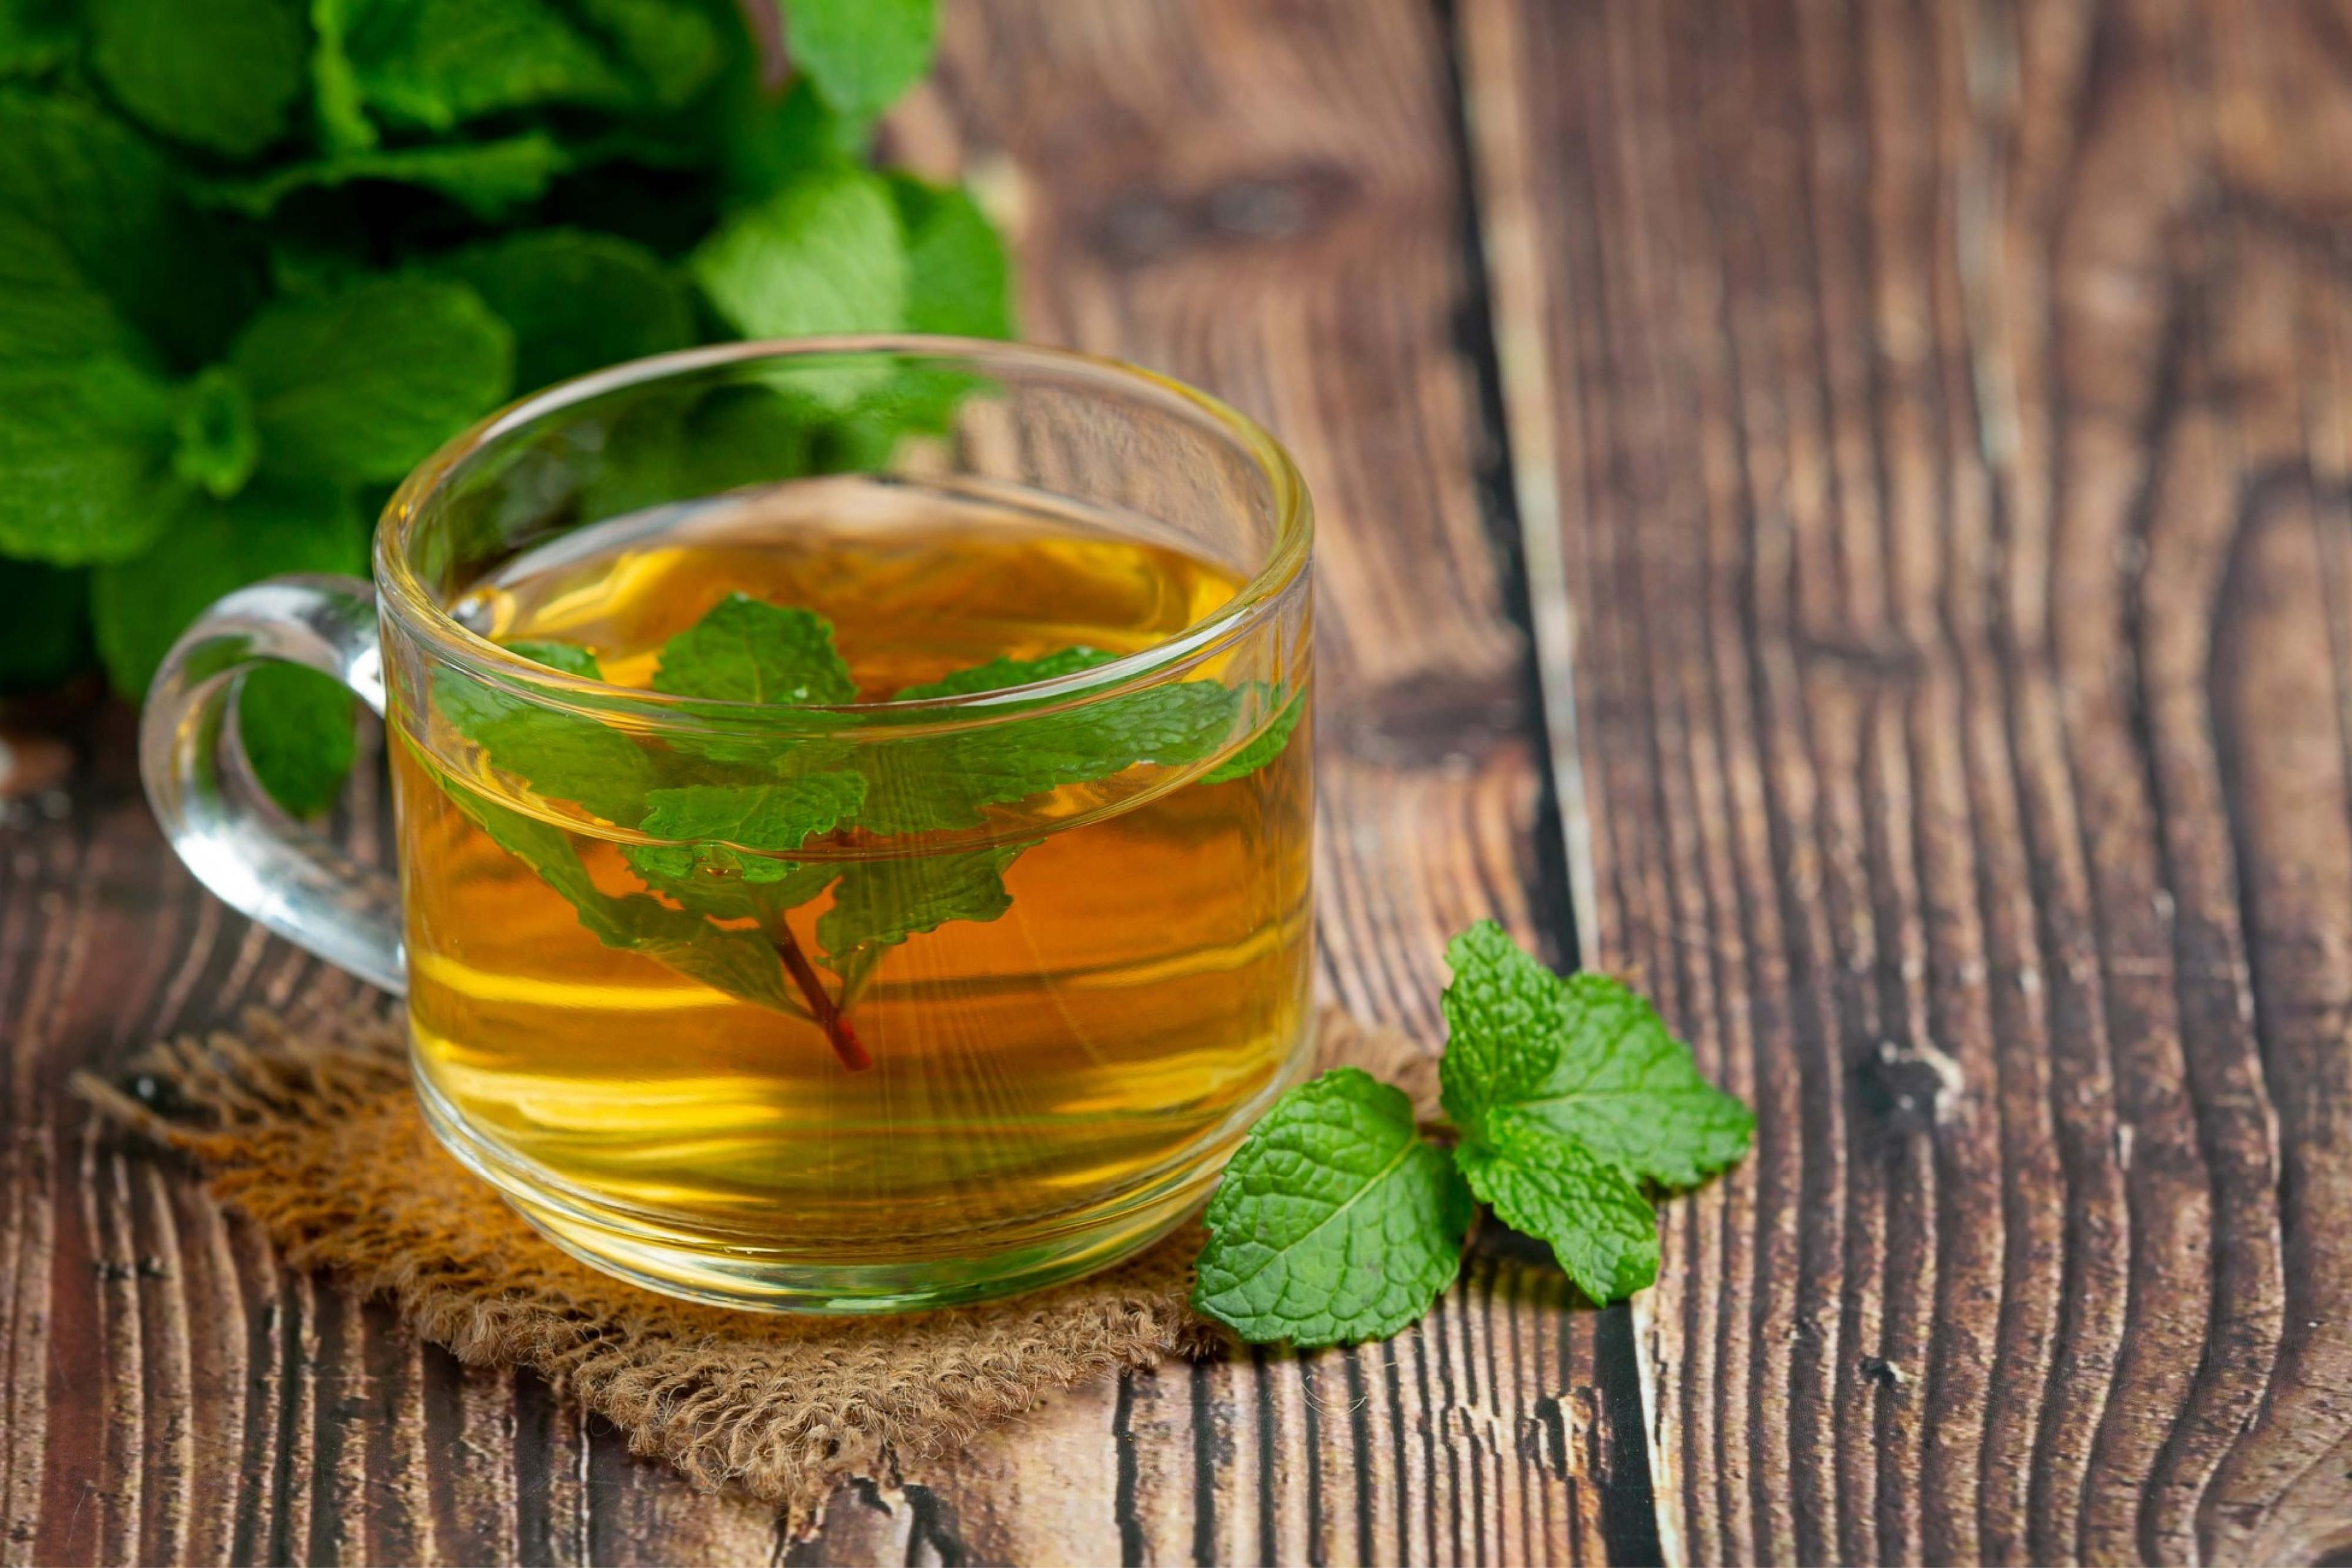 पुदीना चाय के फायदे, रेसिपी और जोखिम कारक